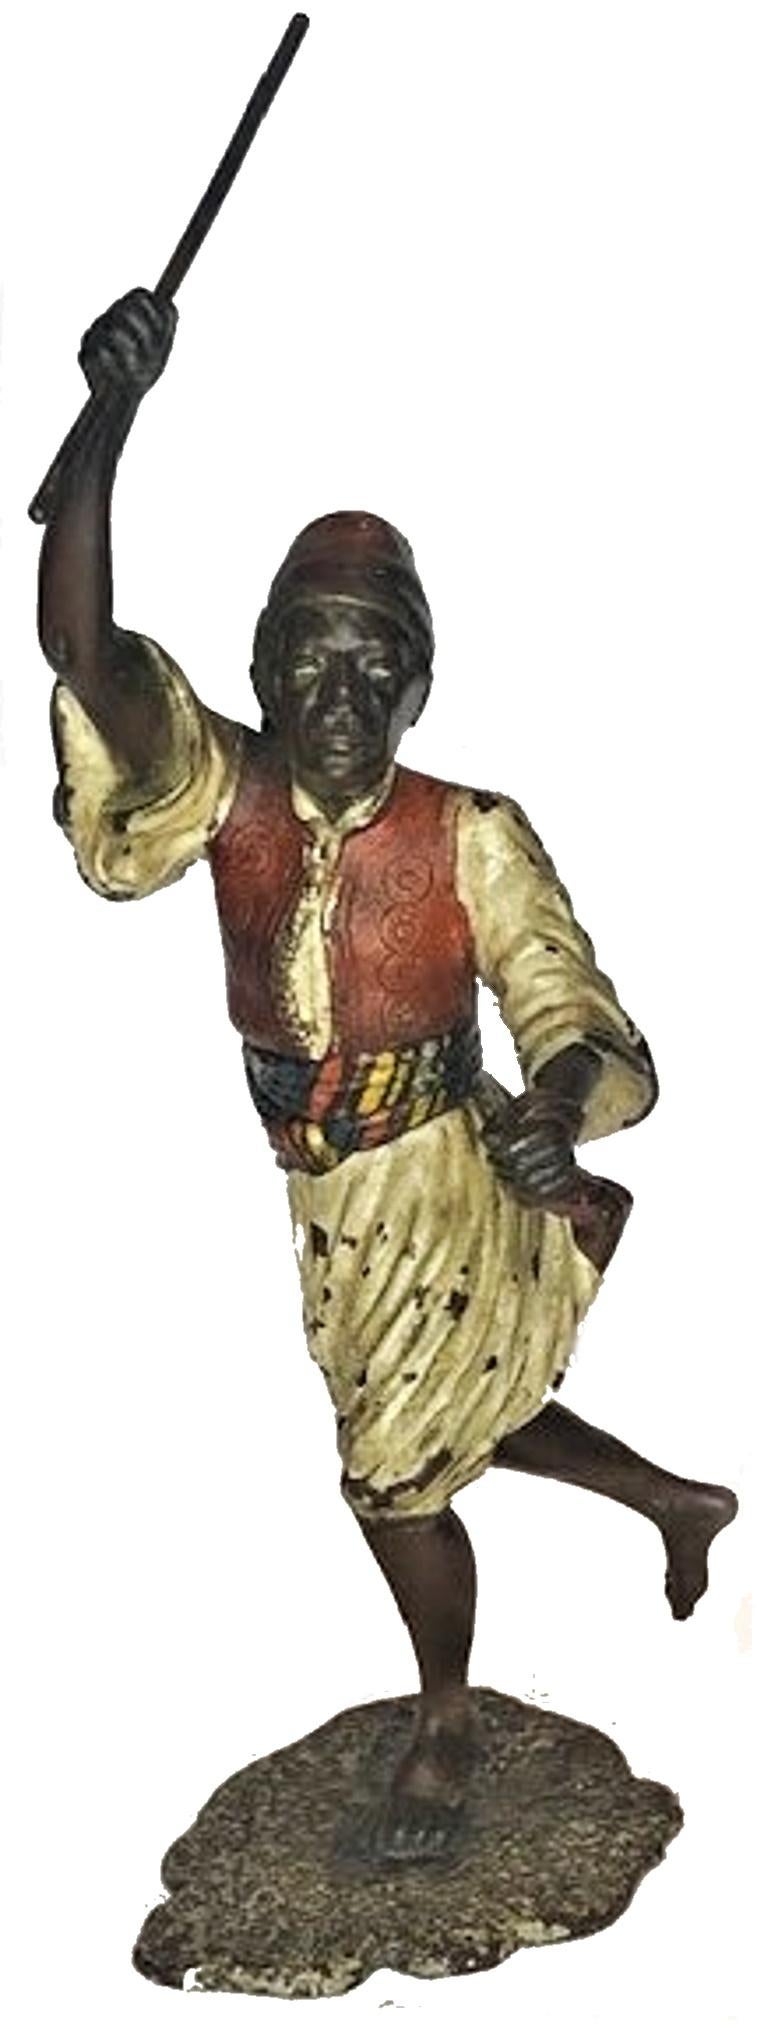 Künstler: Franz Xaver Bergmann 

Bildhauerei: Mauren-Krieger

Beschreibung: Diese wunderbare lebensechte Skulptur zeigt einen maurischen Krieger in einem historischen Kostüm, der gerade einen Speer wirft. Sie ist aus polychromer, kalt bemalter